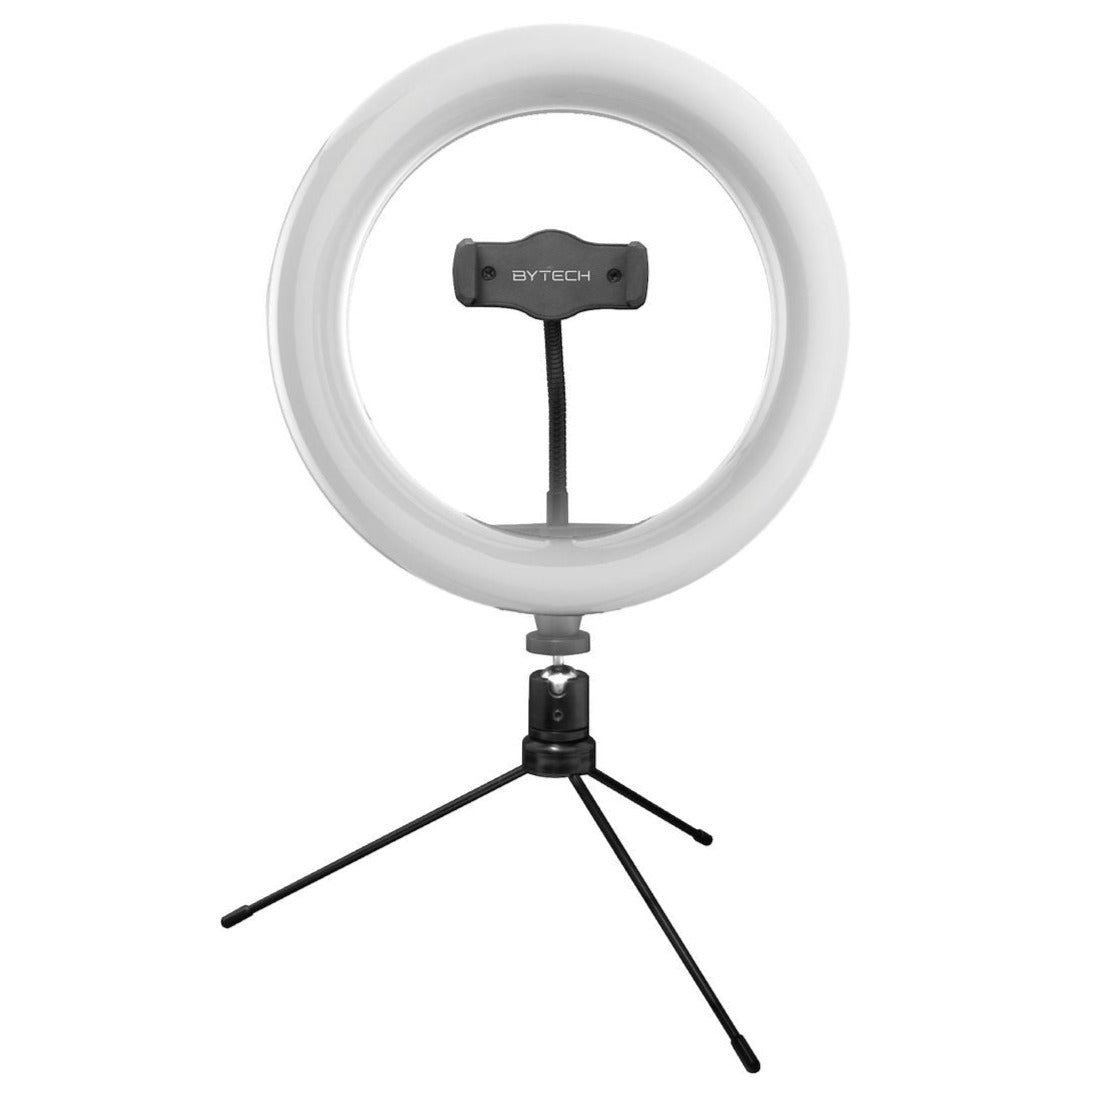 Aro de Luz con trípode Bytech | 10" de diametro | Trípode de sobremesa | Soporte rotativo para teléfono - Multimax